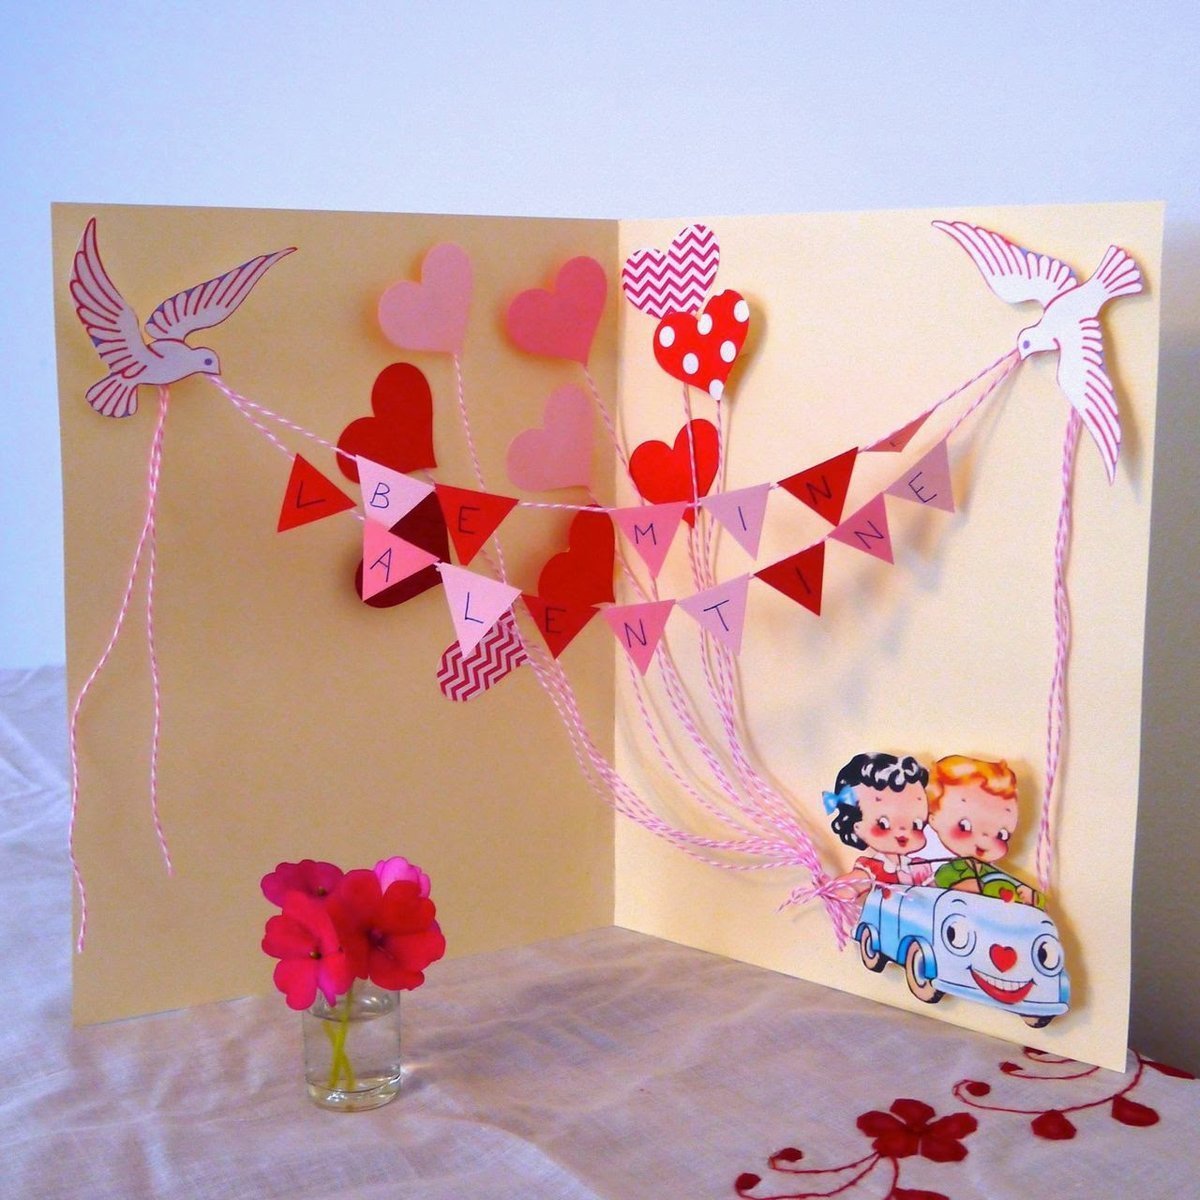 Поделки из картона для девочки на день рождения идеи по изготовлению своими руками фото